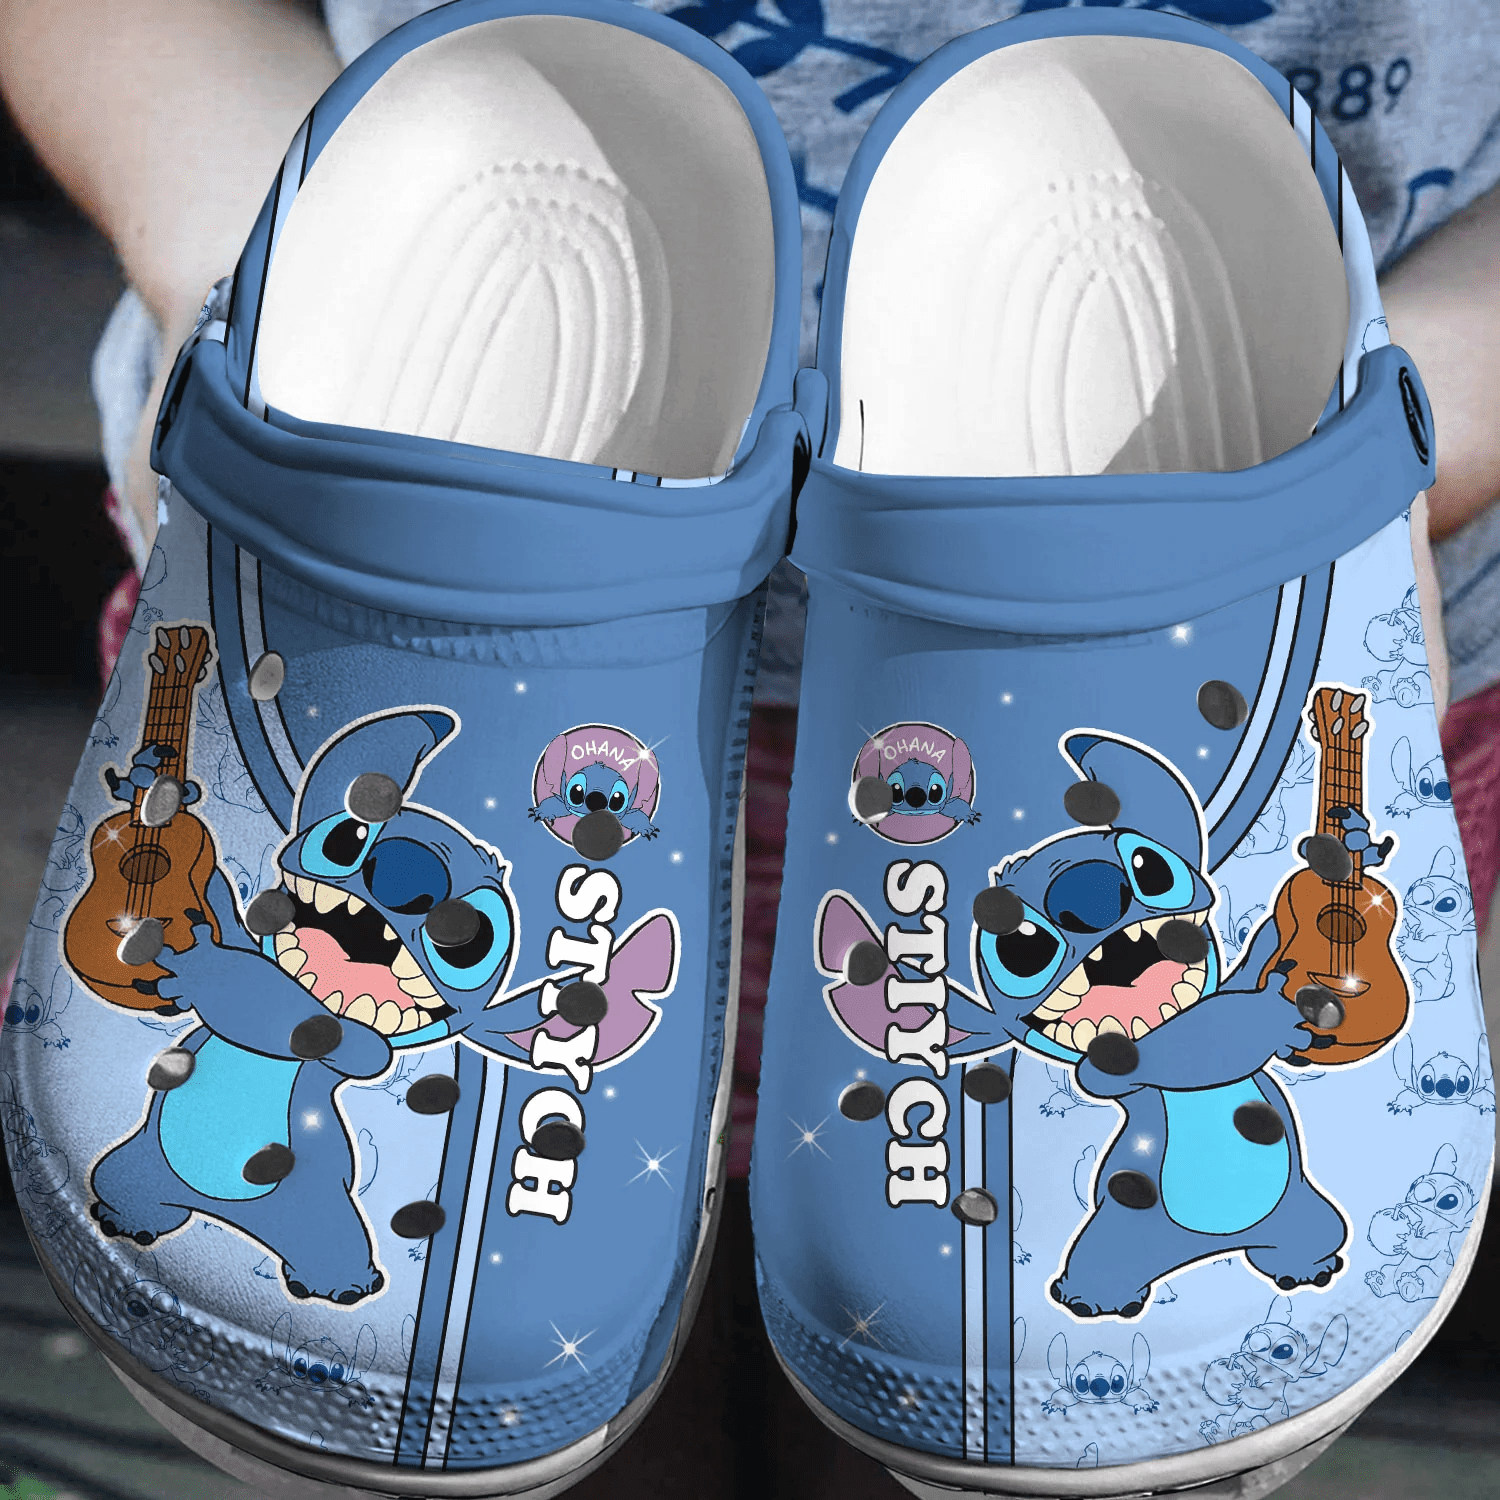 Personalized Stitch Crocs 3D Clog Shoes